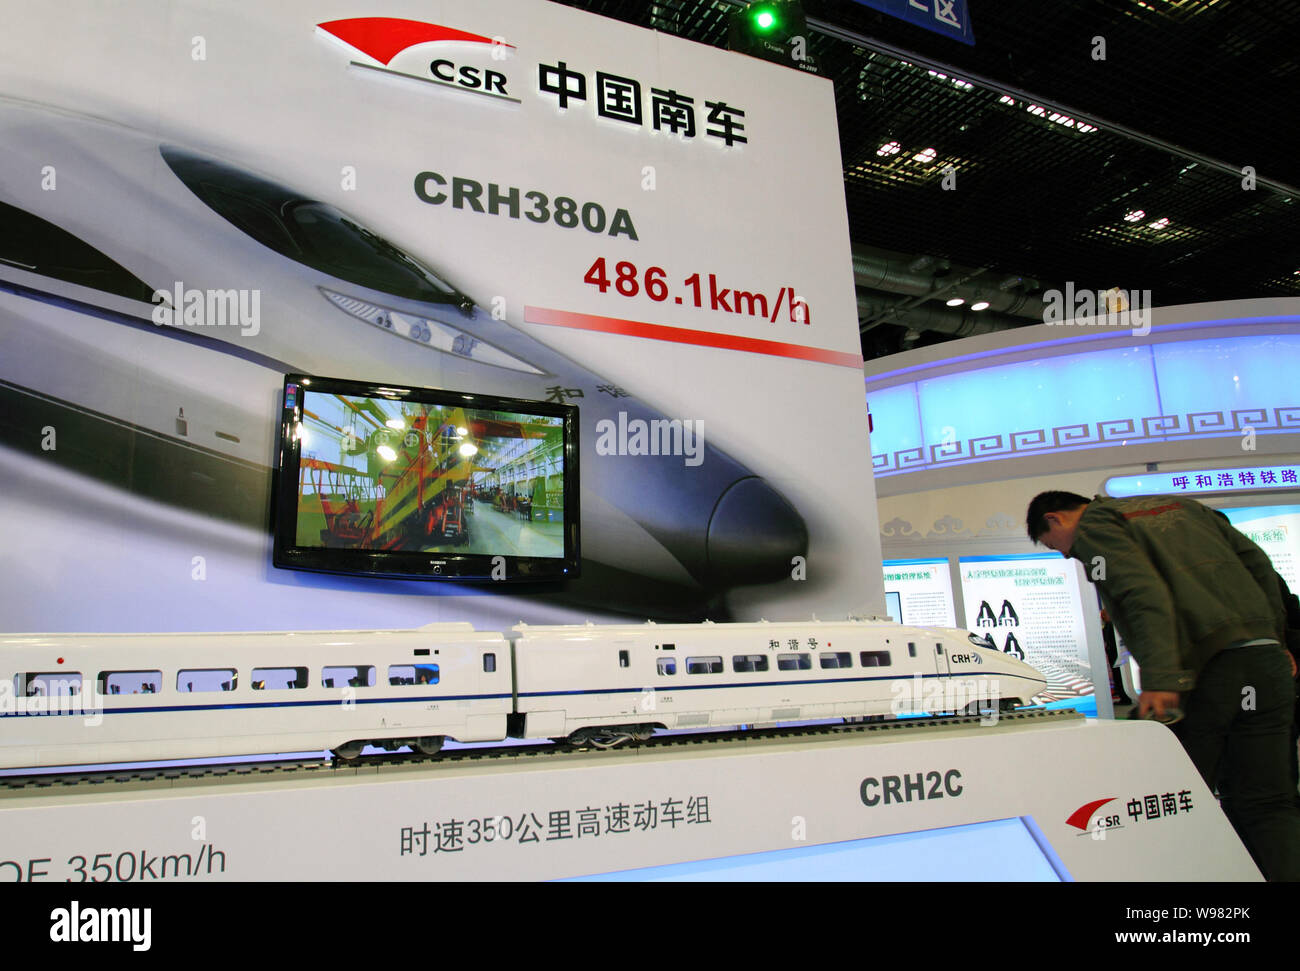 ---- Ein Modell des CRH380 A high-speed Train ist auf dem Stand von CSR Corporation Limited in der modernen Eisenbahn Ausstellung 2010 Namen angezeigt. Stockfoto